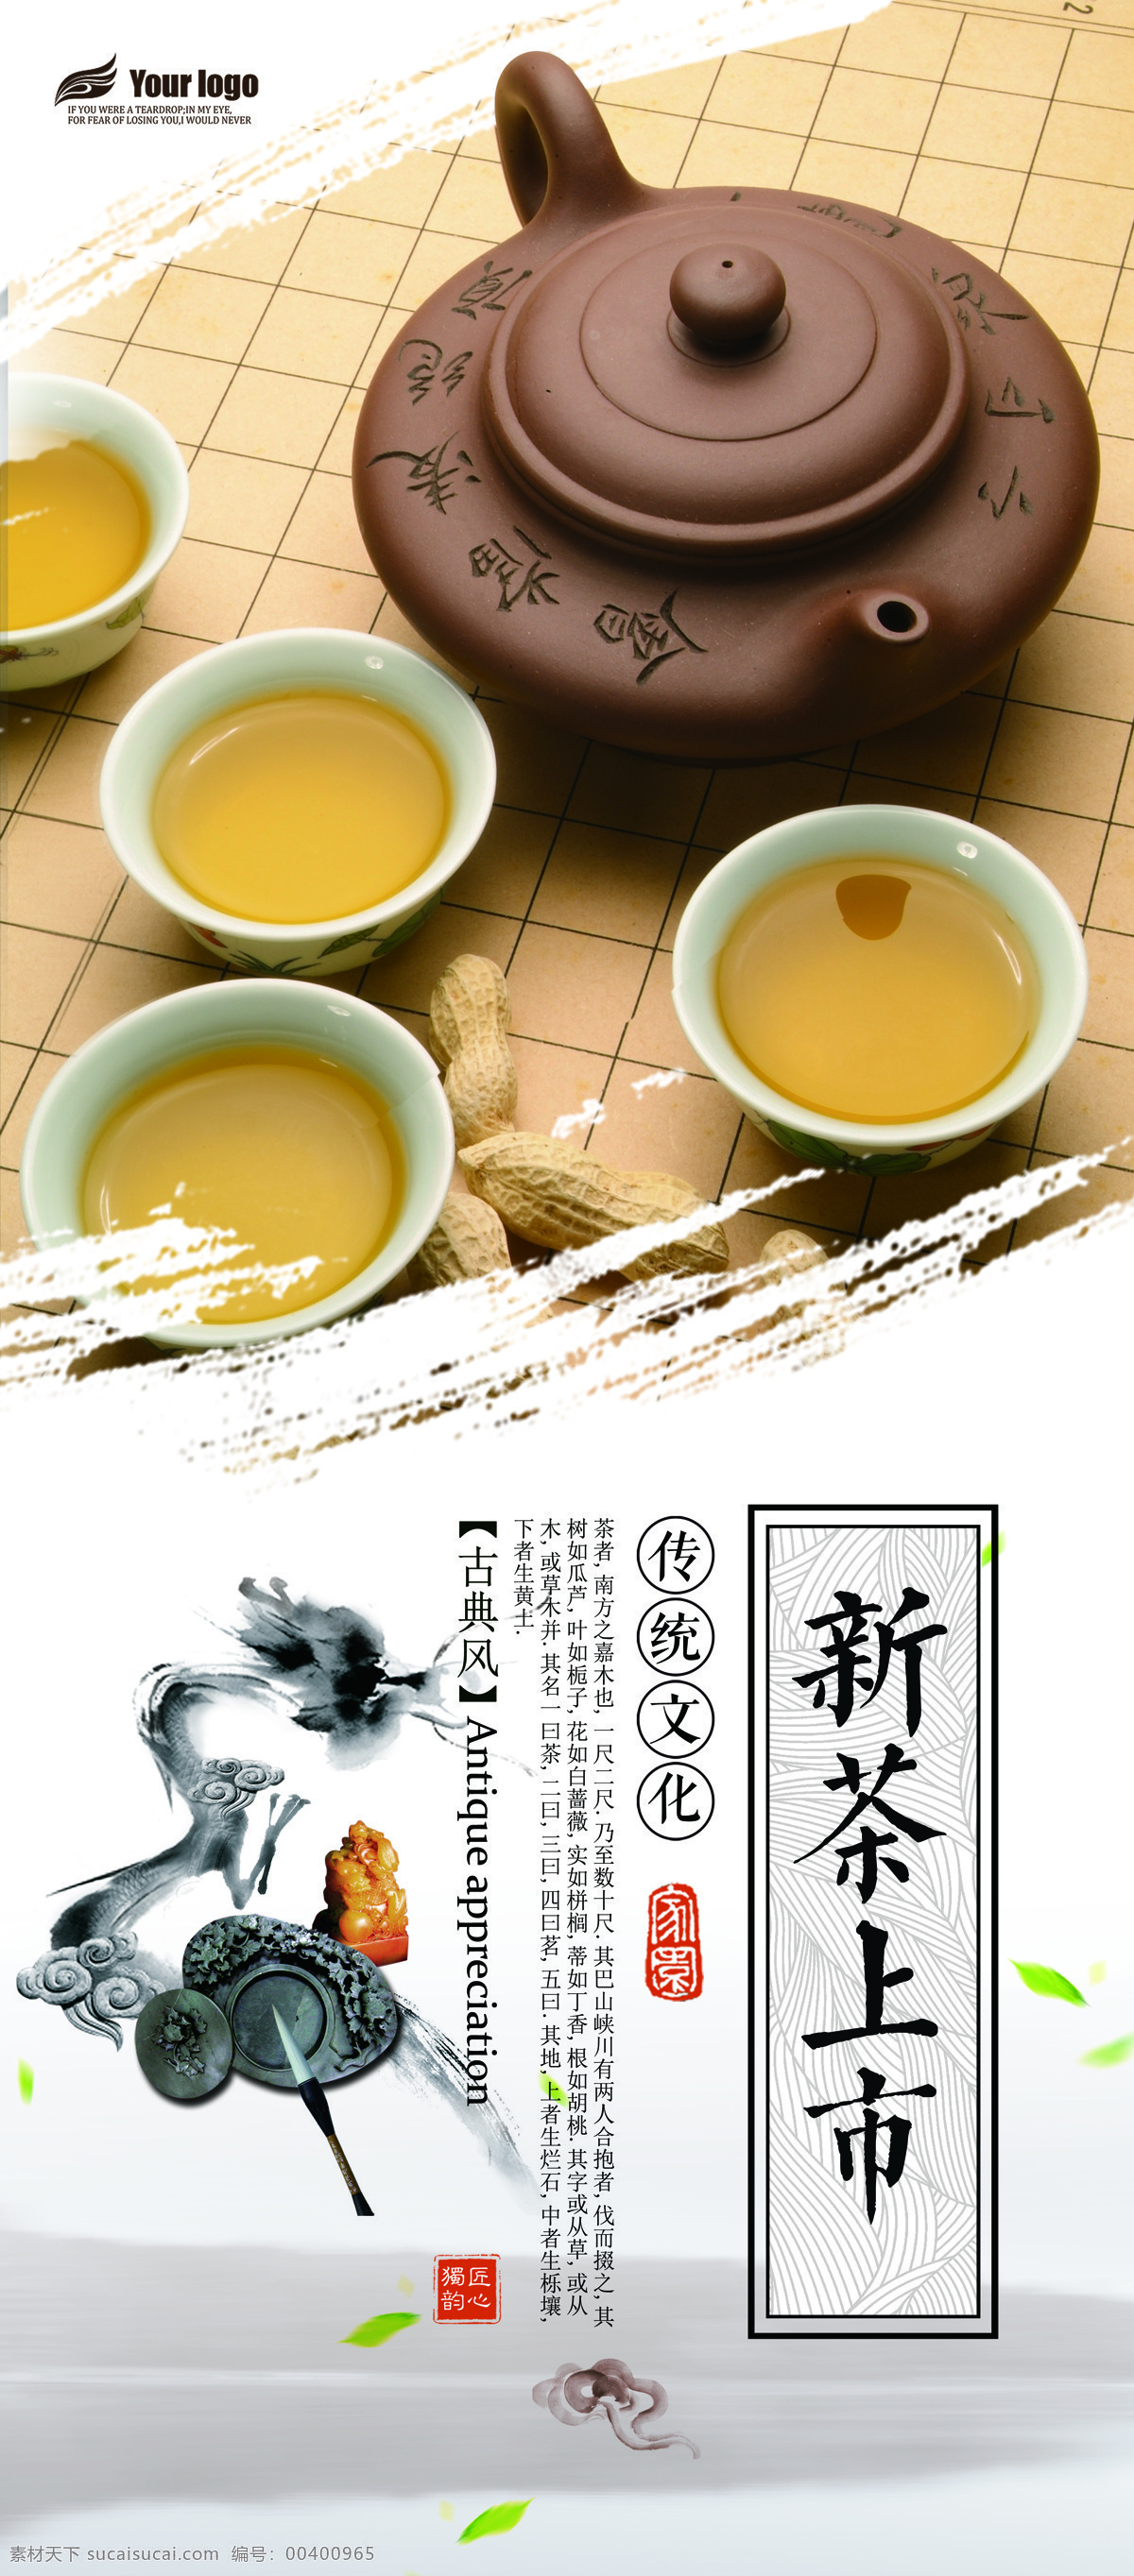 2018 年中 国风 茶文化 展架 免费 模板 中国风 茶叶 茶道 新茶上市 新品 红茶 绿茶 春茶 茶文化设计 设计模板 中国风茶 茶文化模板